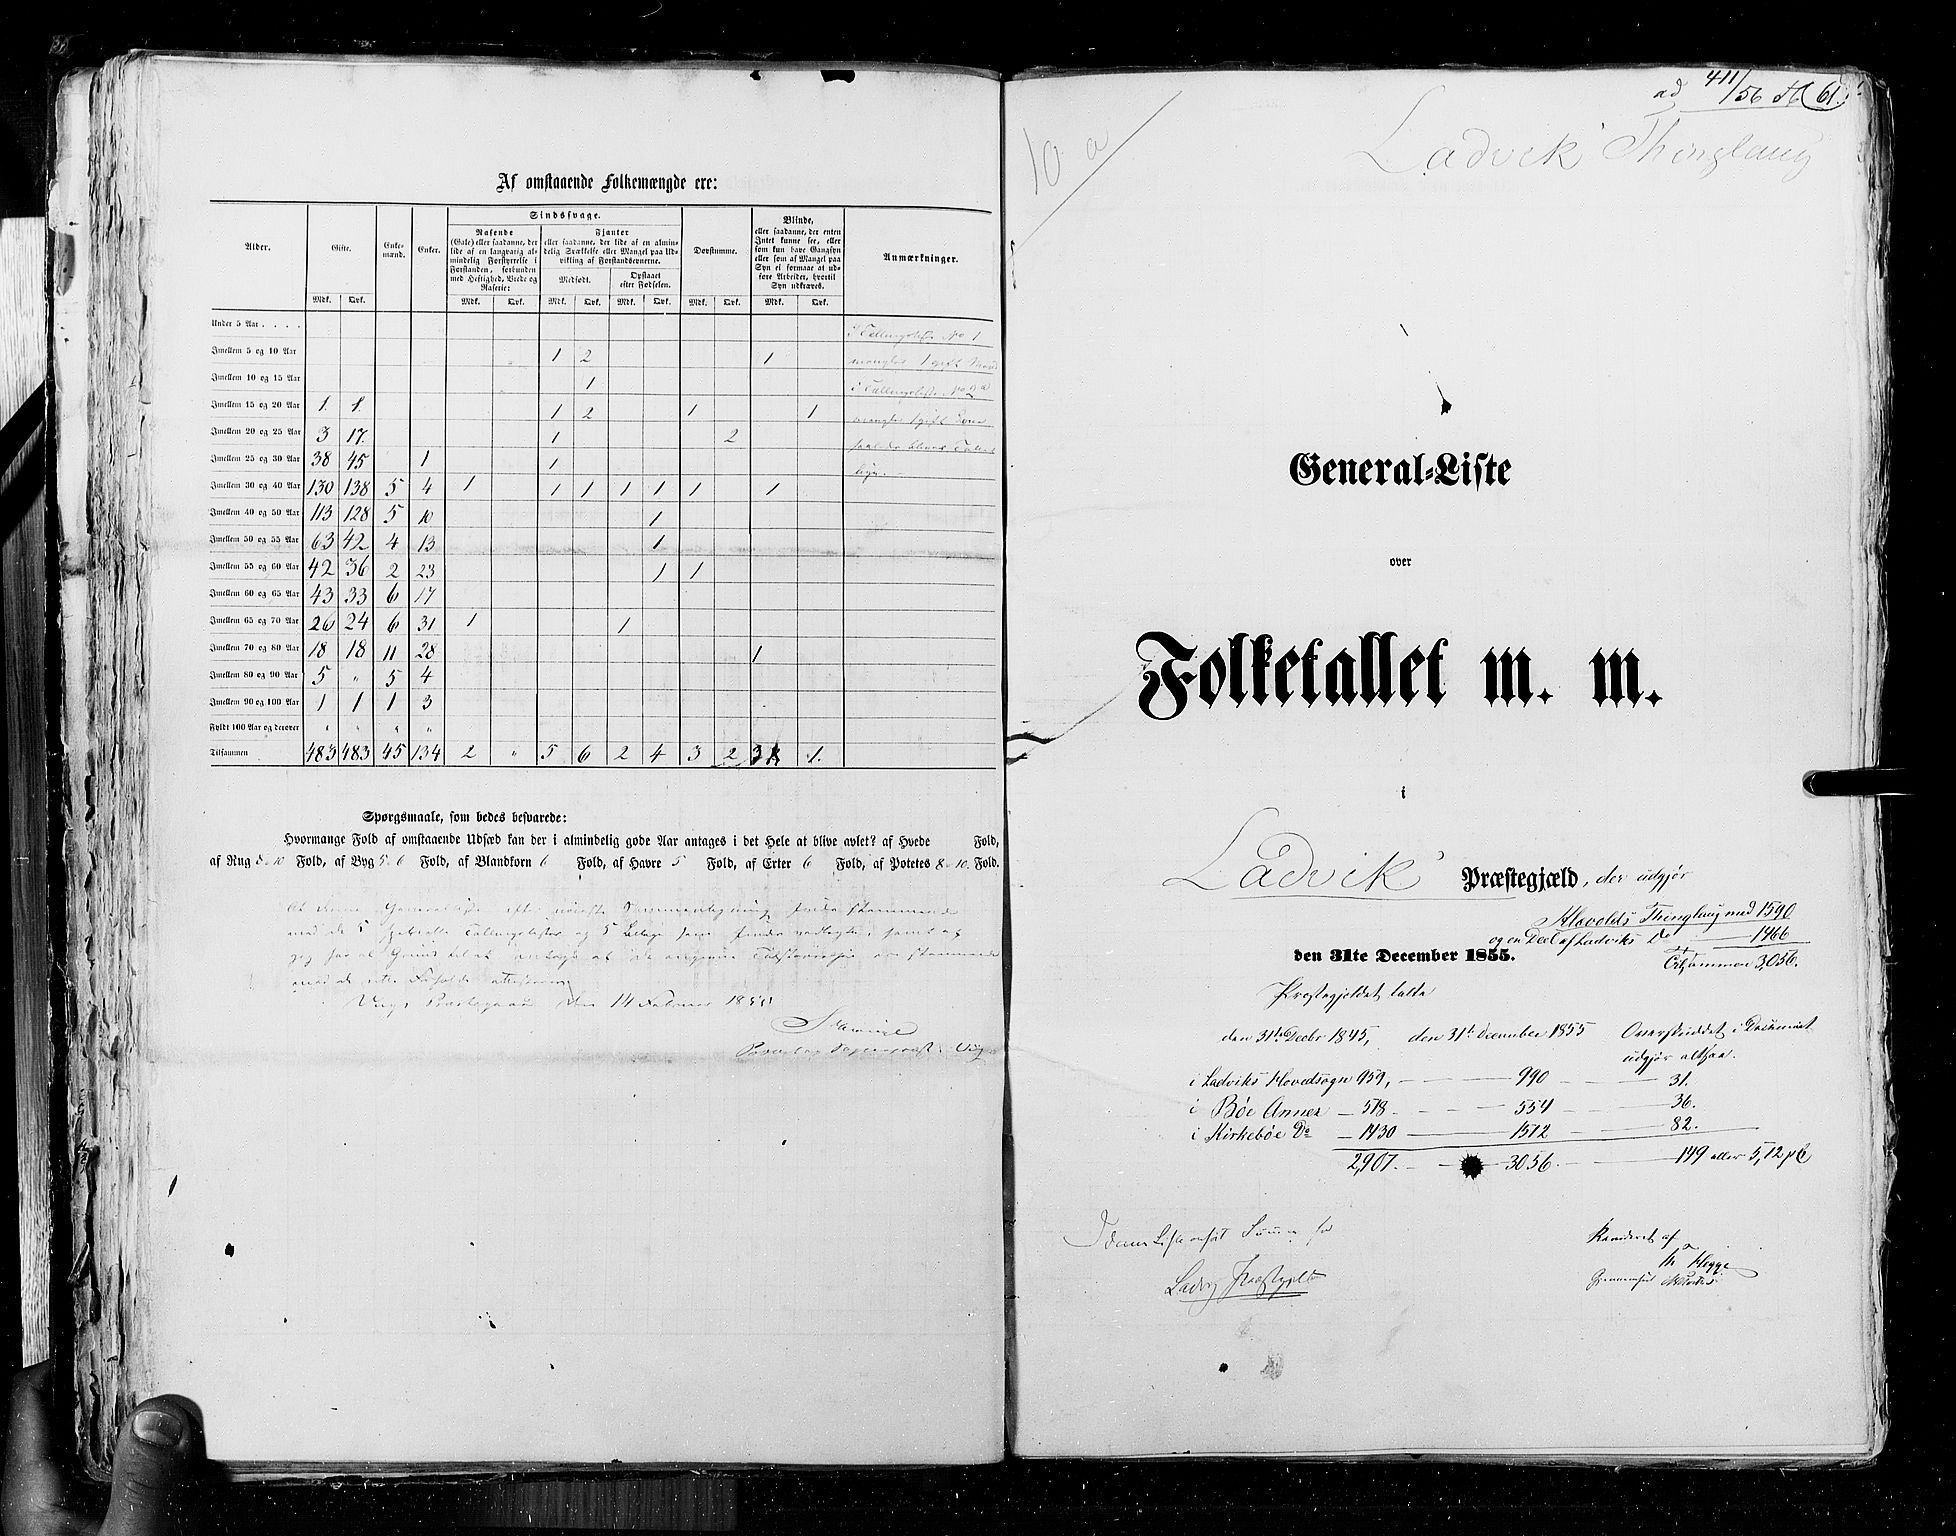 RA, Folketellingen 1855, bind 5: Nordre Bergenhus amt, Romsdal amt og Søndre Trondhjem amt, 1855, s. 61